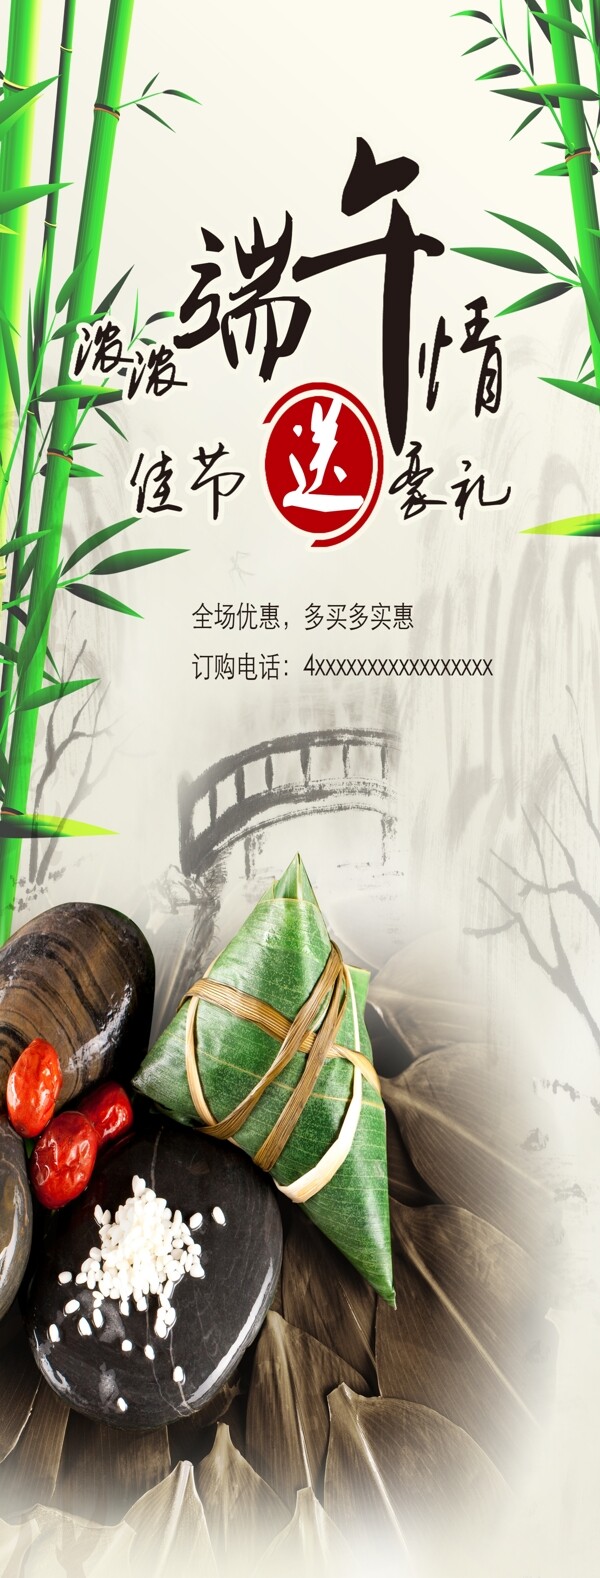 五月五端午情浓中国风海报设计